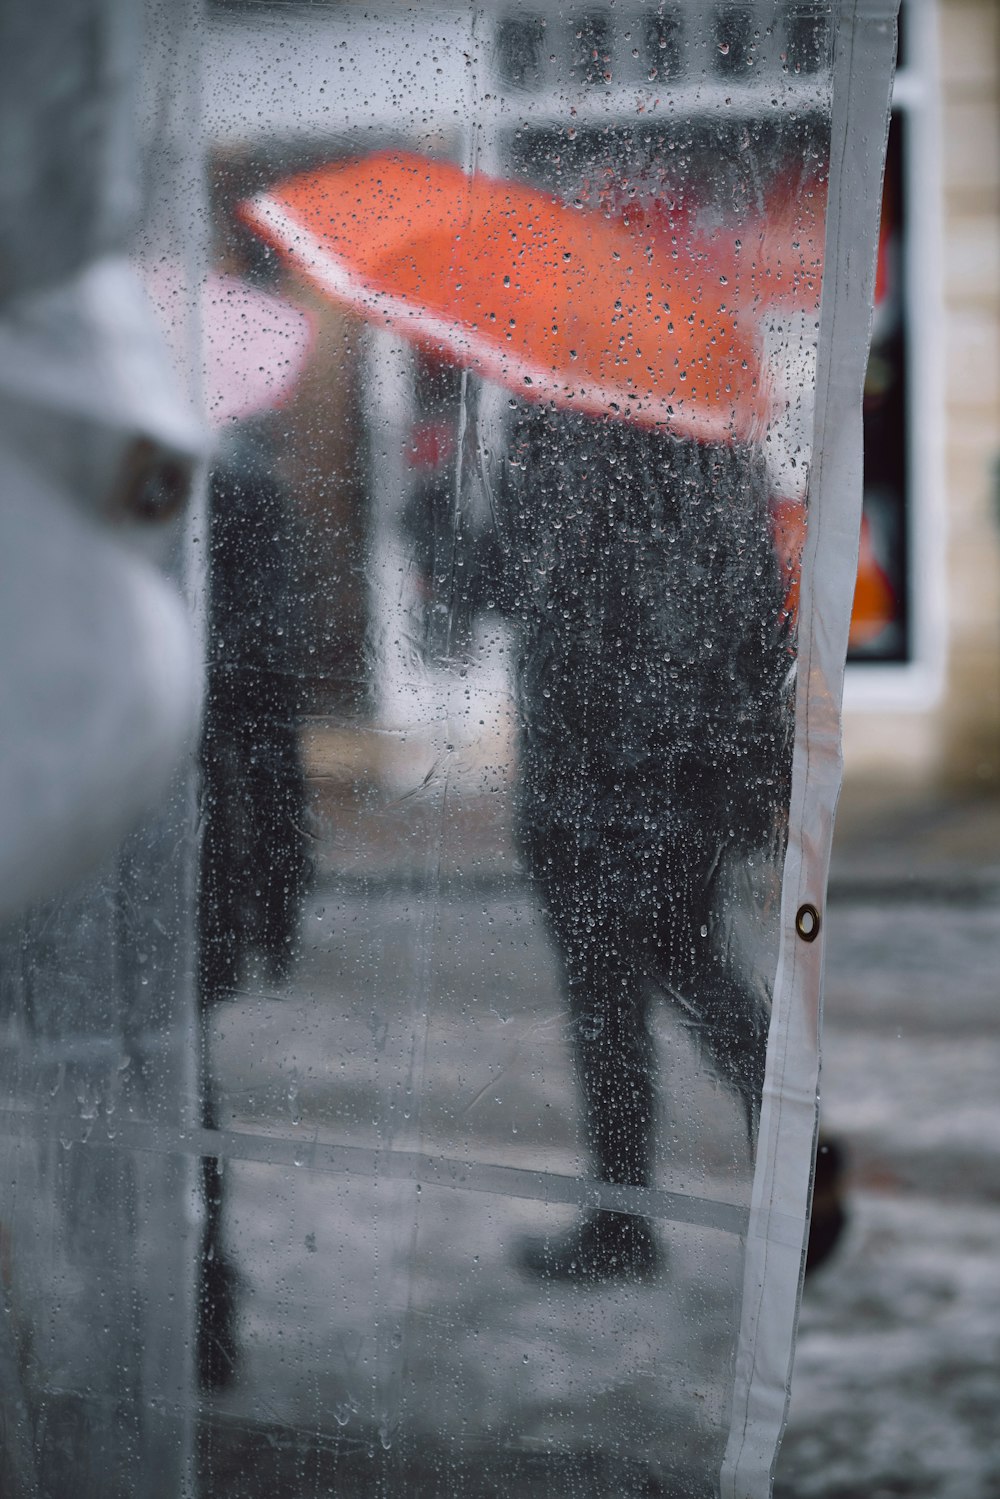 casaco de plástico transparente com gotas de água mostrando as pessoas usando guarda-chuva